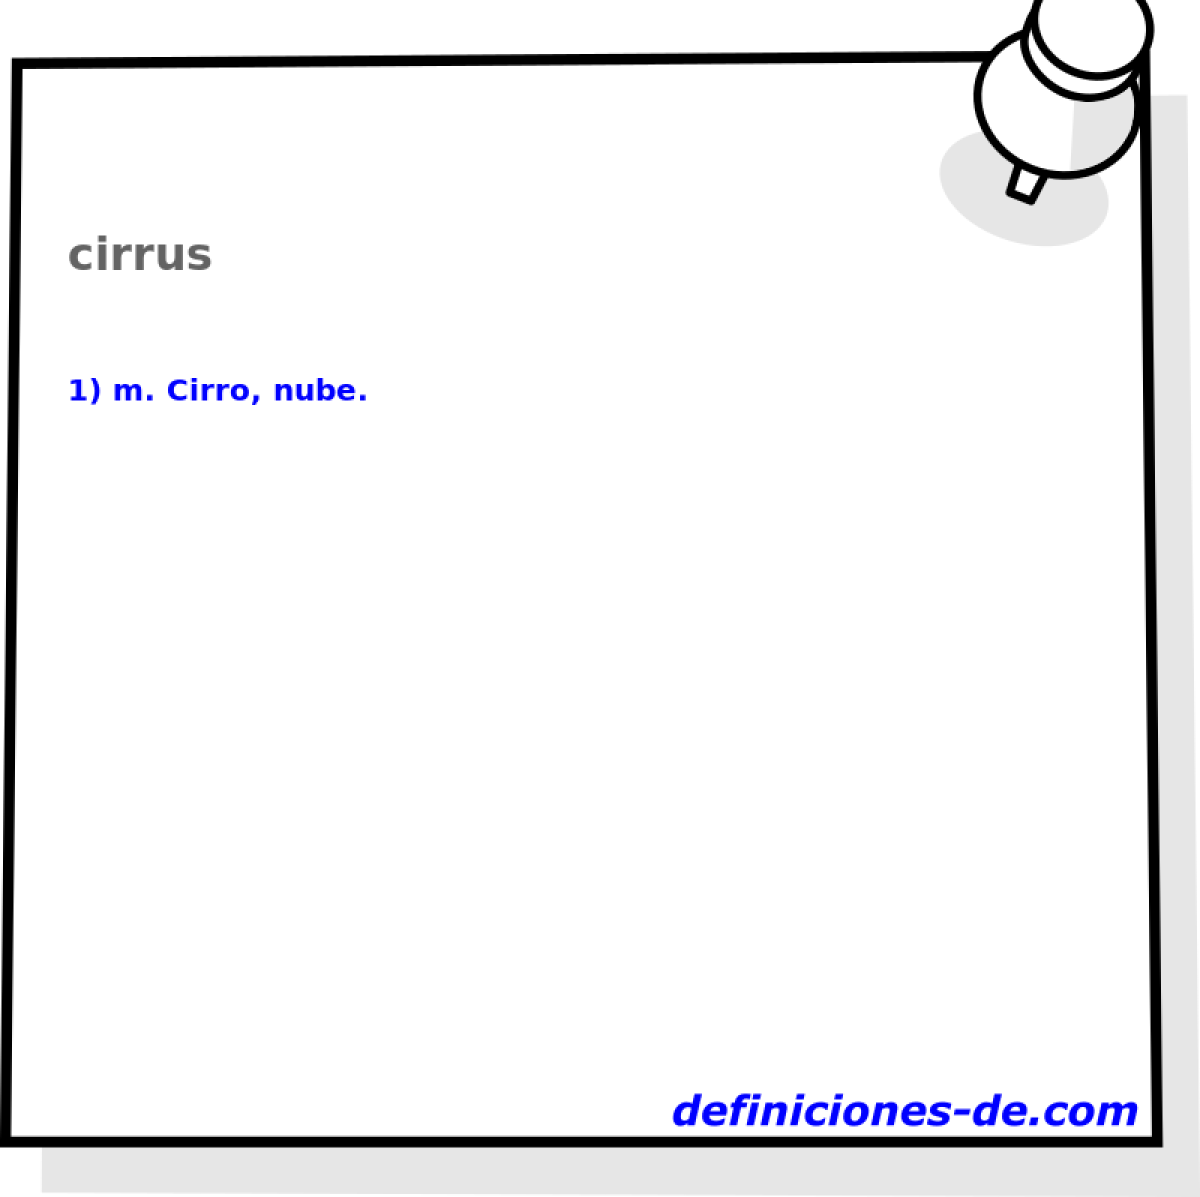 cirrus 